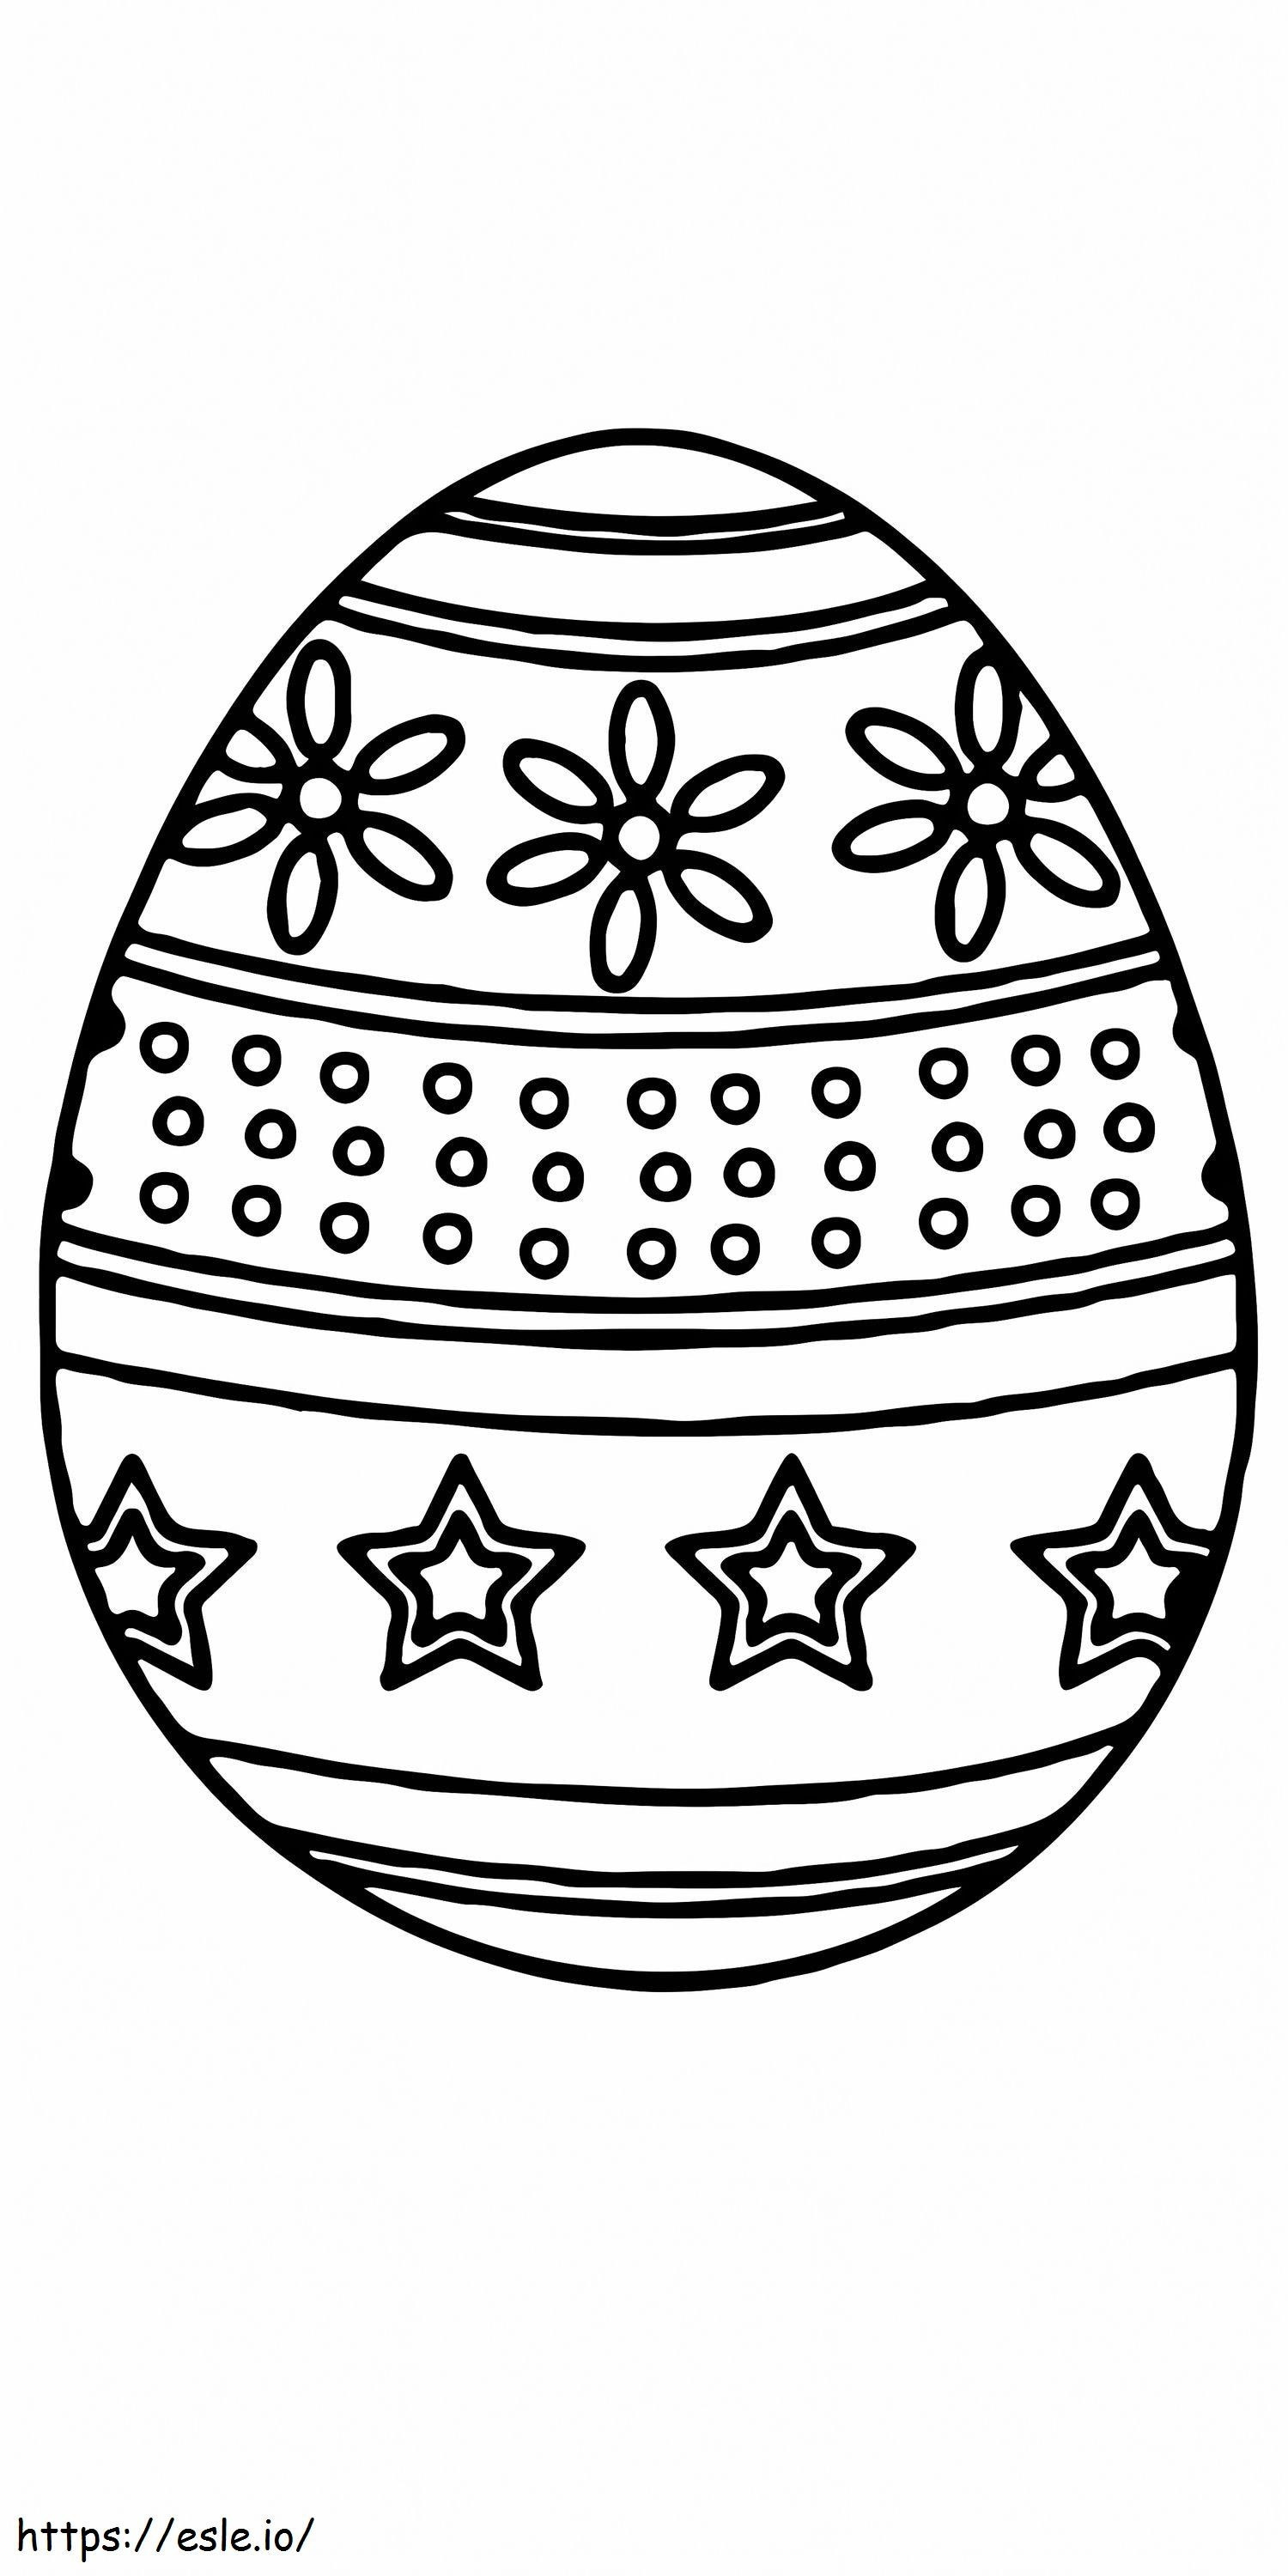 Paskalya Yumurtası Çiçek Desenleri Yazdırılabilir 13 boyama